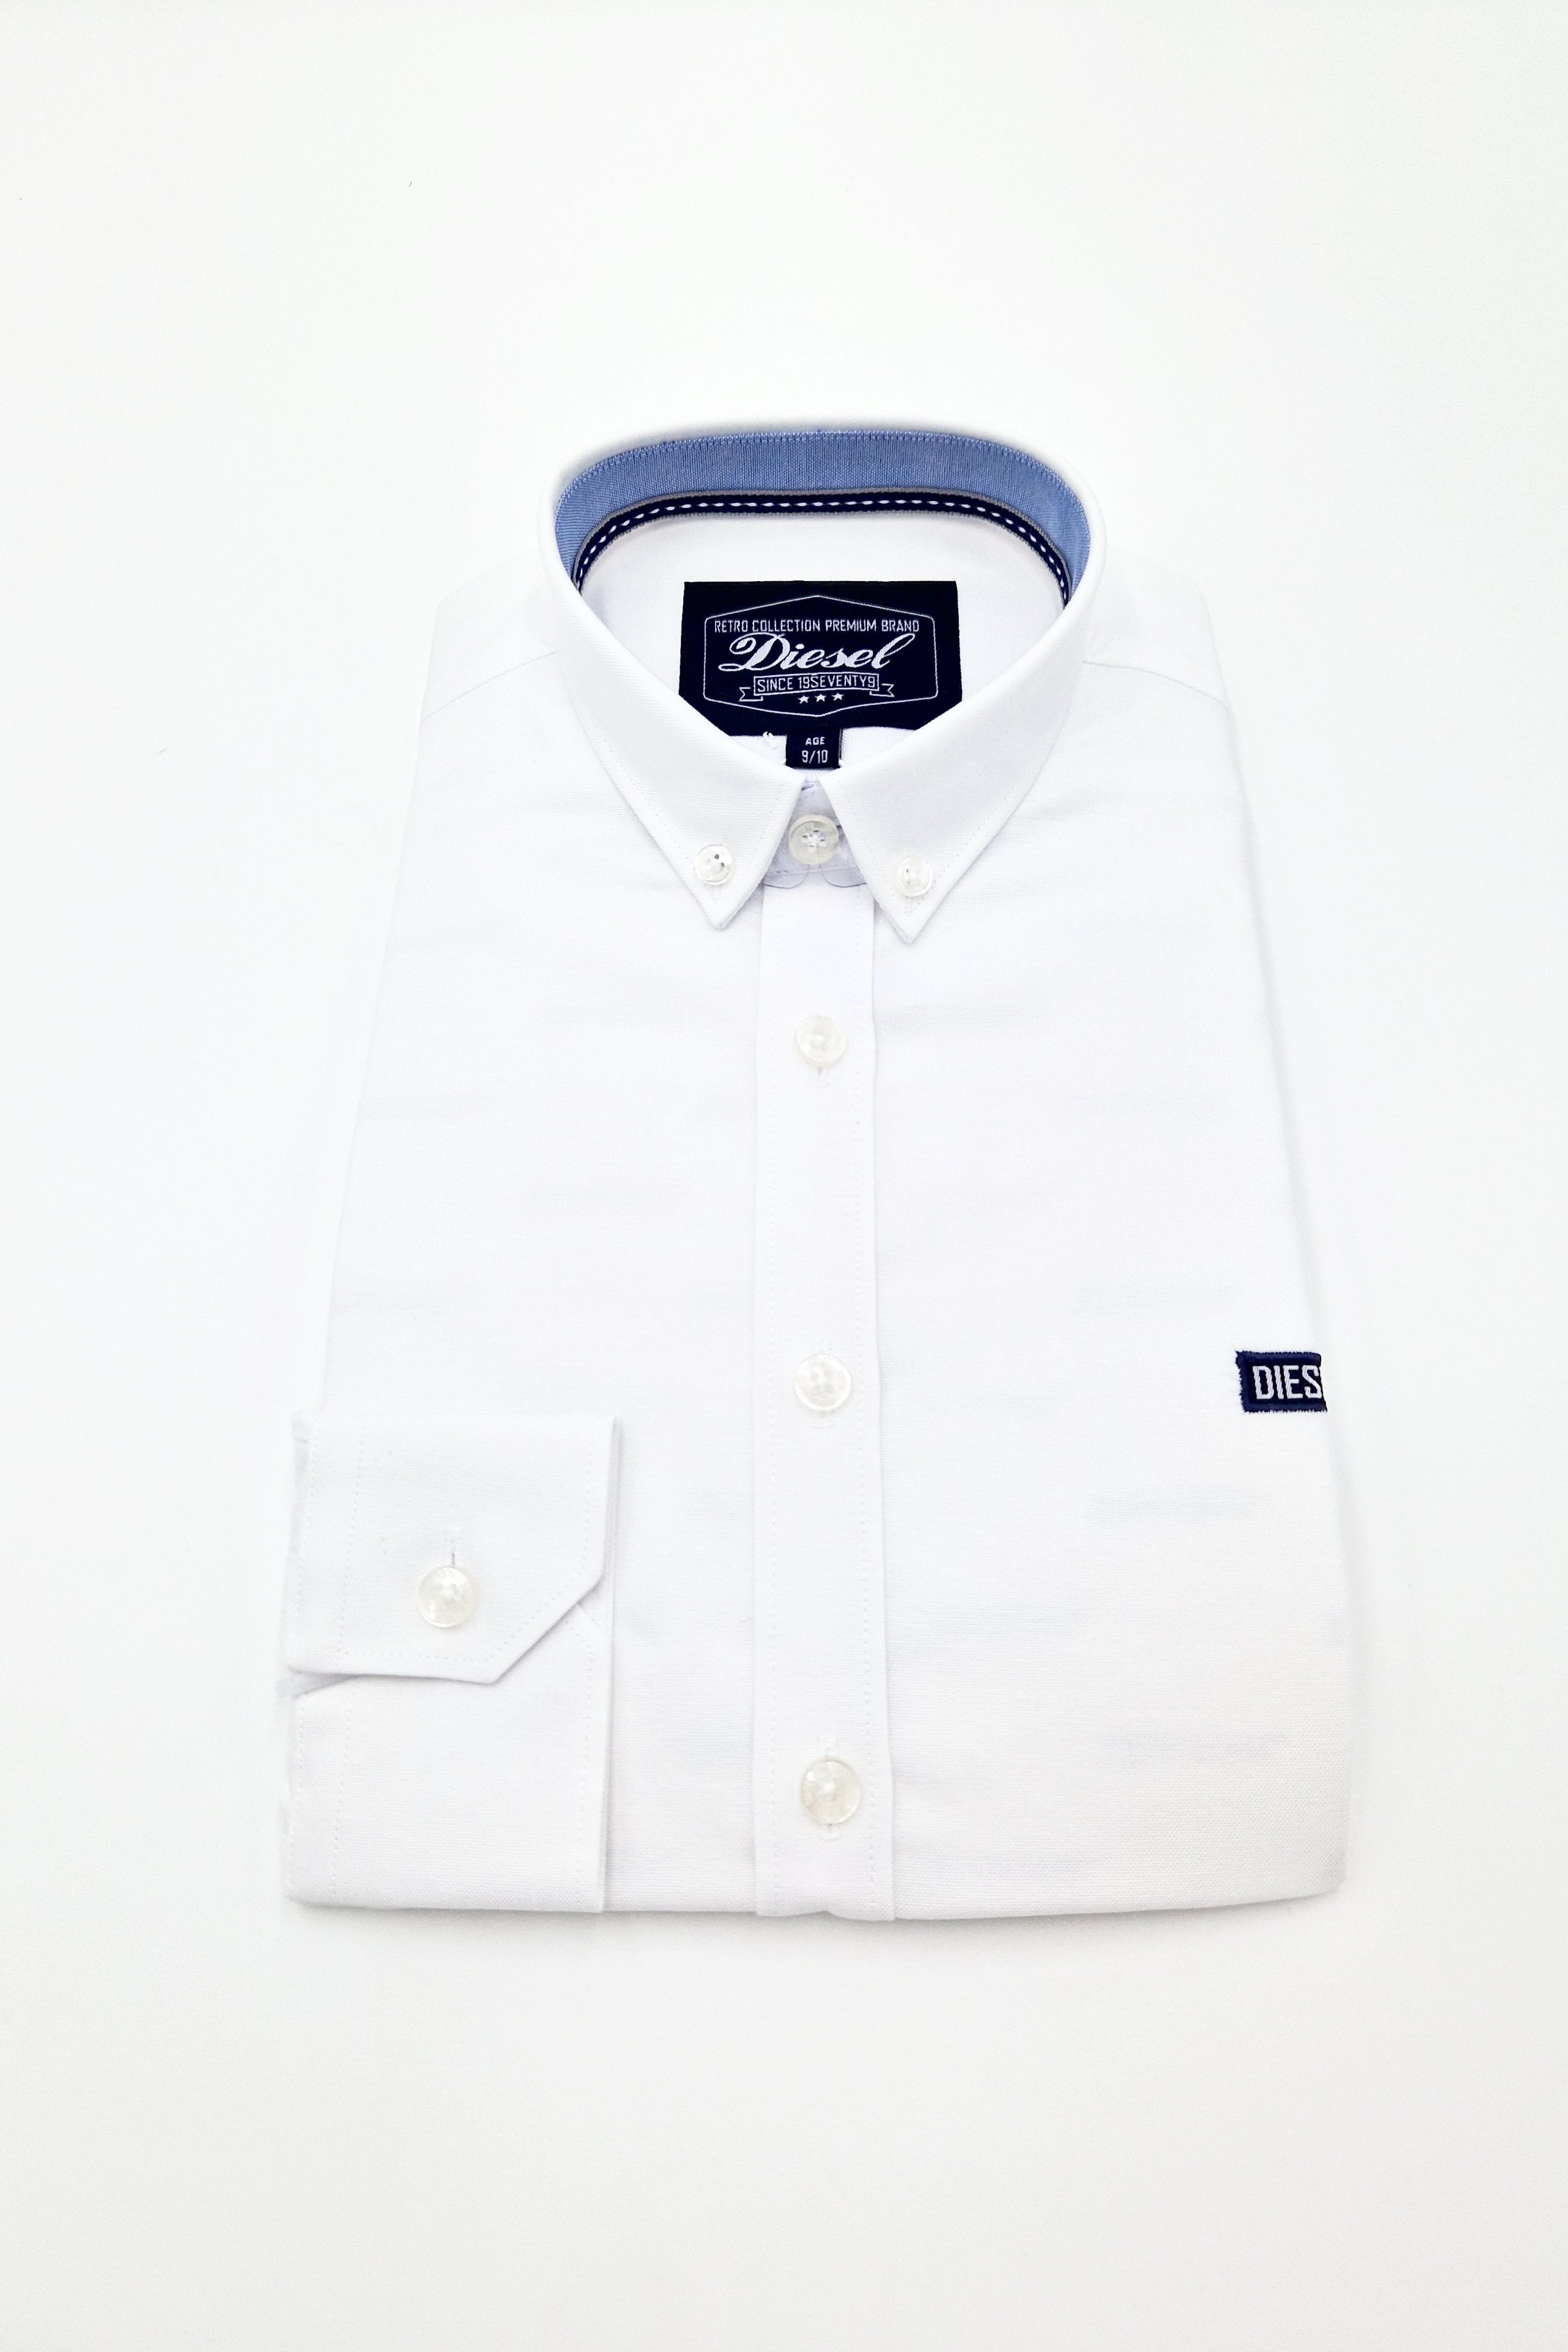 Tiernan Boys Shirt White DKB-925 002